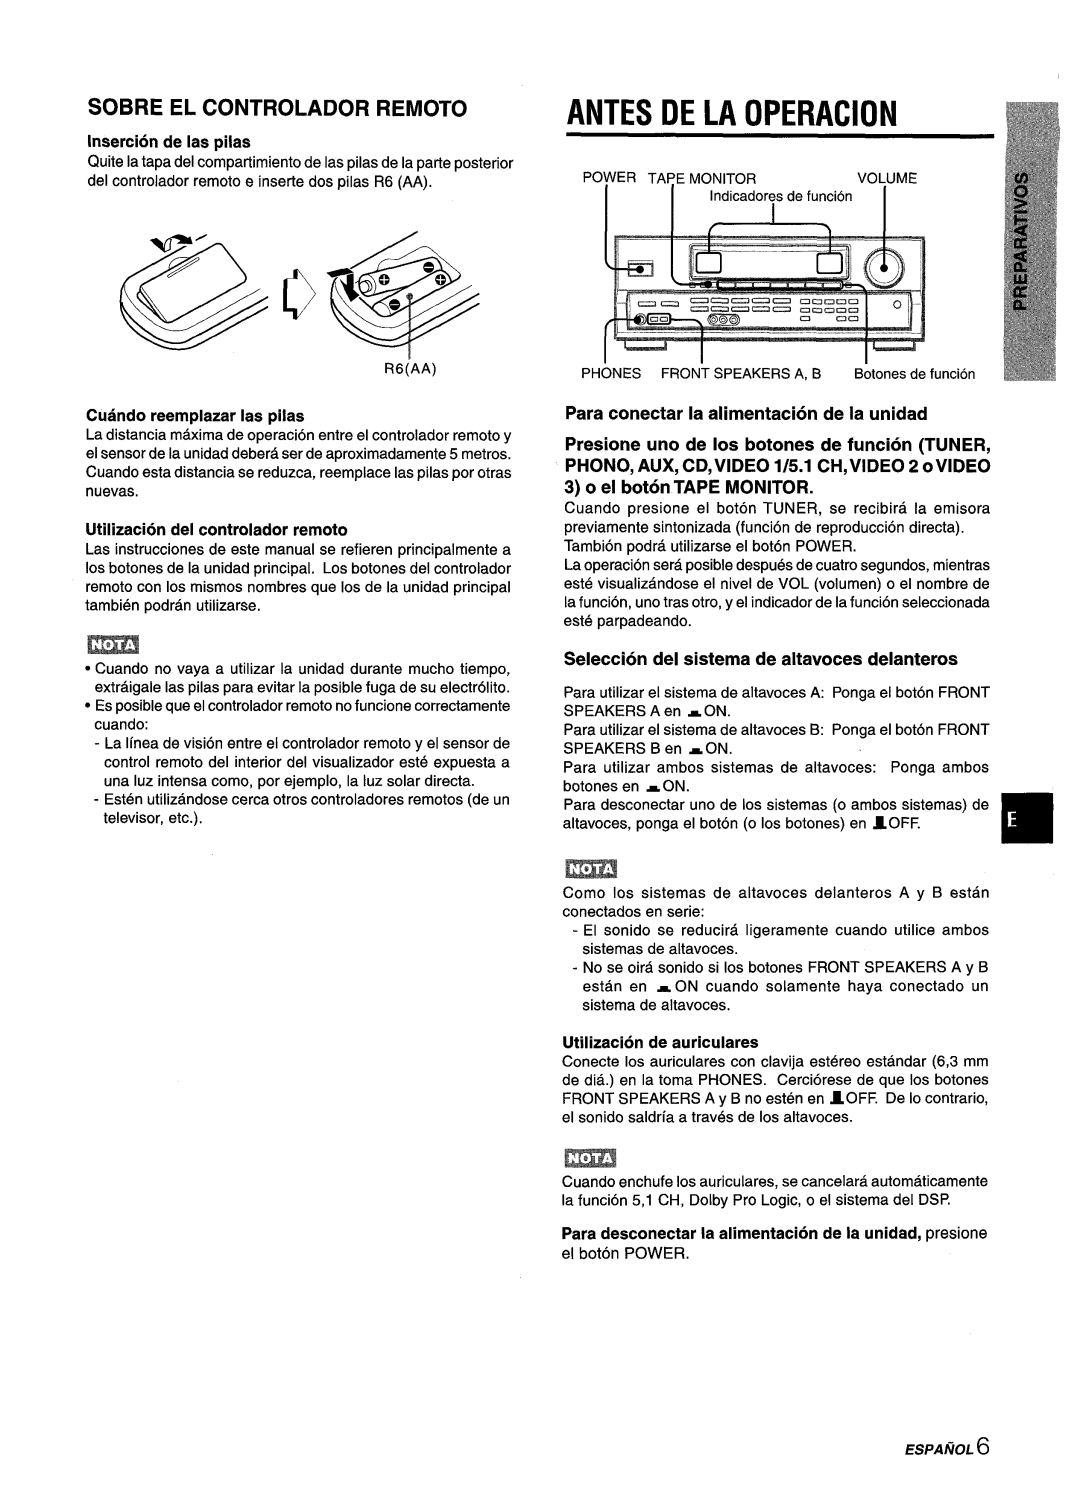 Aiwa AV-D25 manual Antes De La Operacion, ~S/JA/ik~6, Sobre El Controlador Remoto, Insertion de Ias pilas 